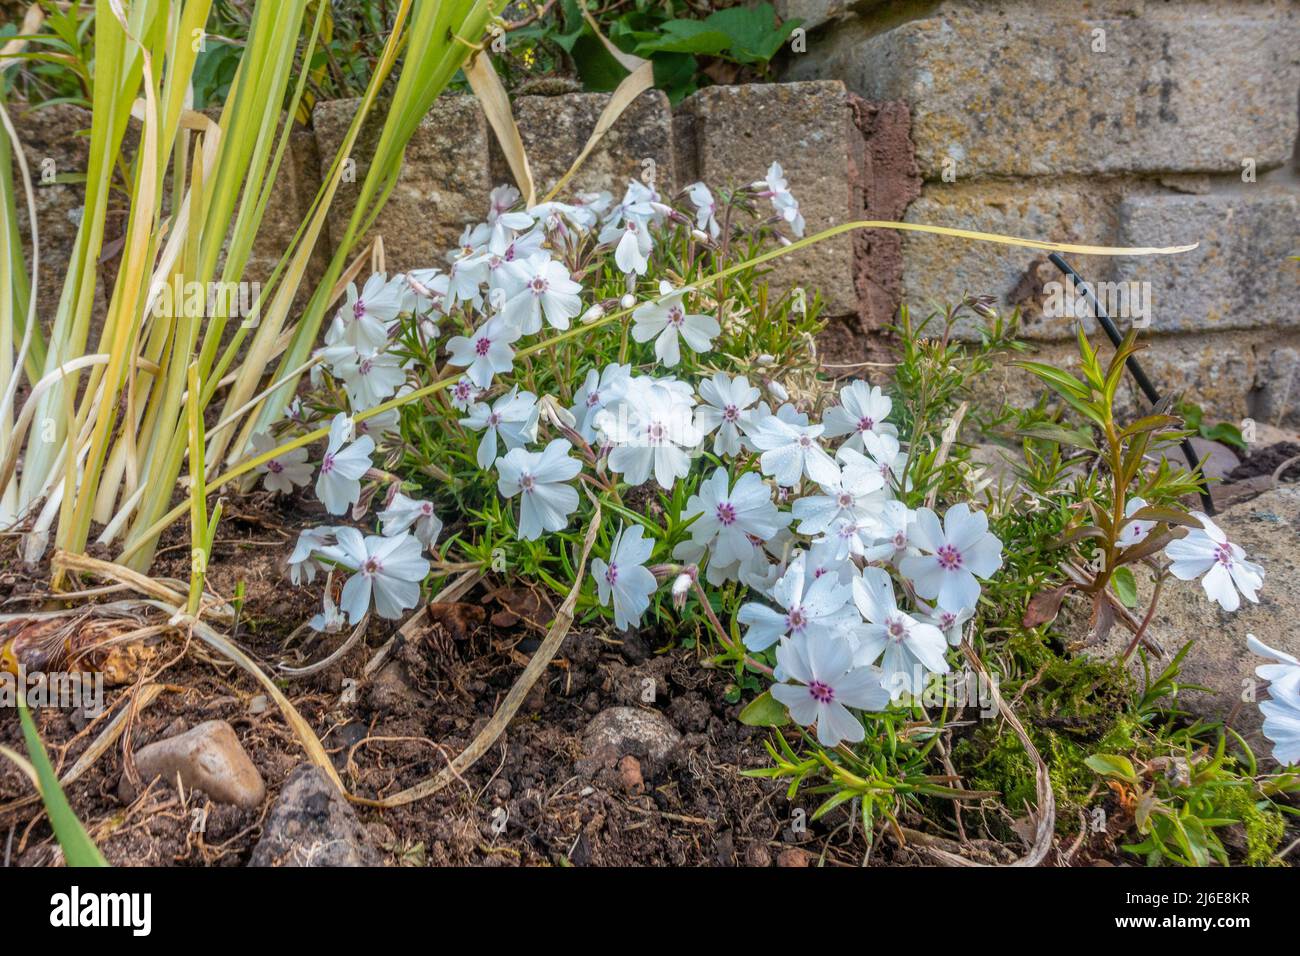 Moos phlox oder Phlox subulata L wächst in einem Garten und blüht mit weißen Blüten. Stockfoto